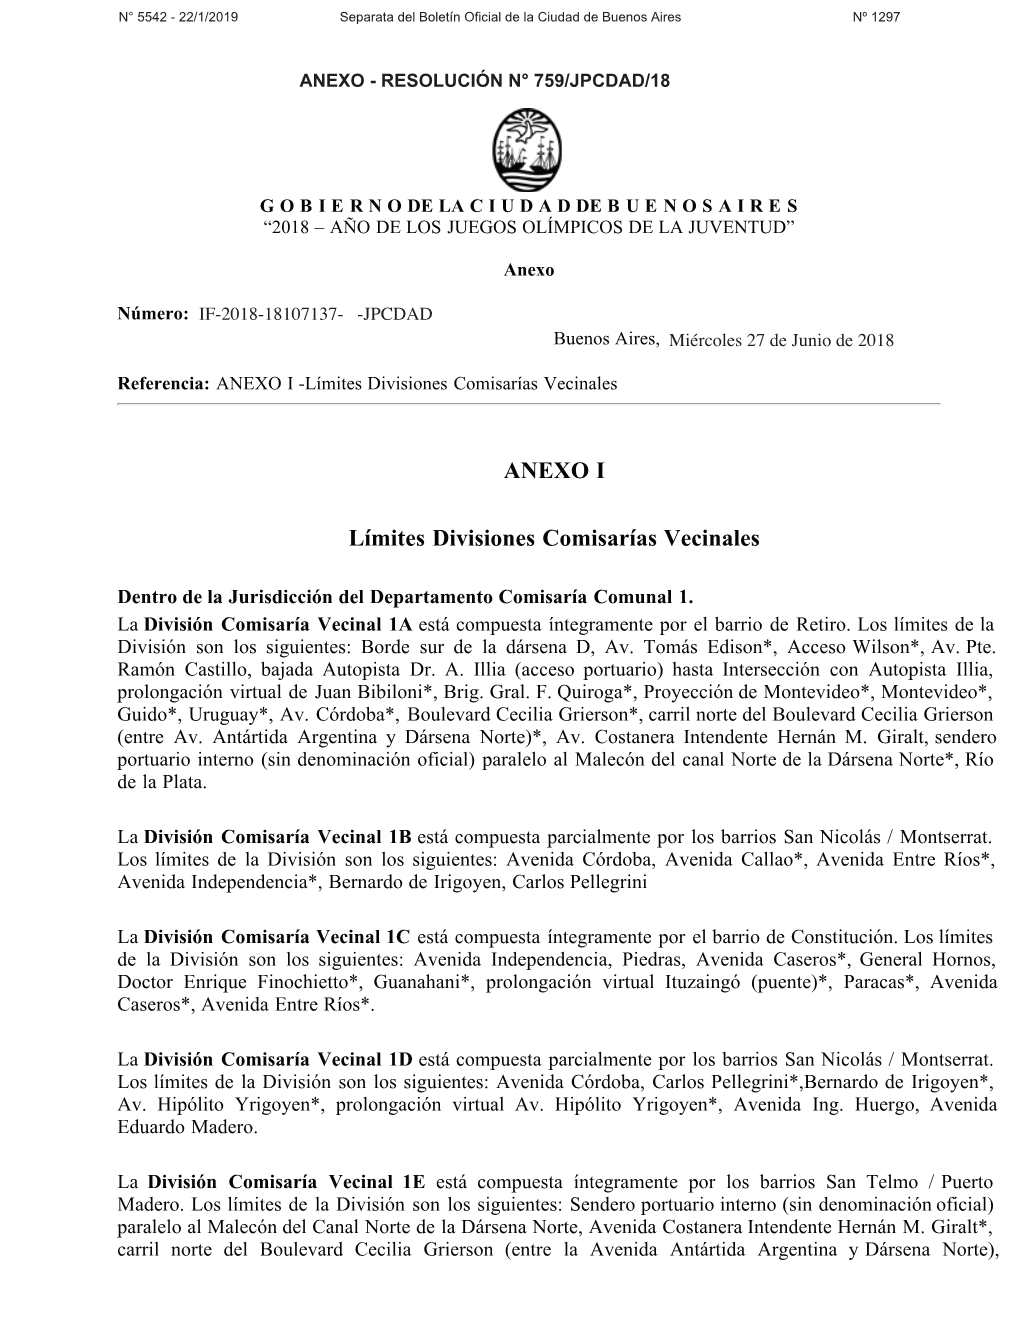 ANEXO I Límites Divisiones Comisarías Vecinales